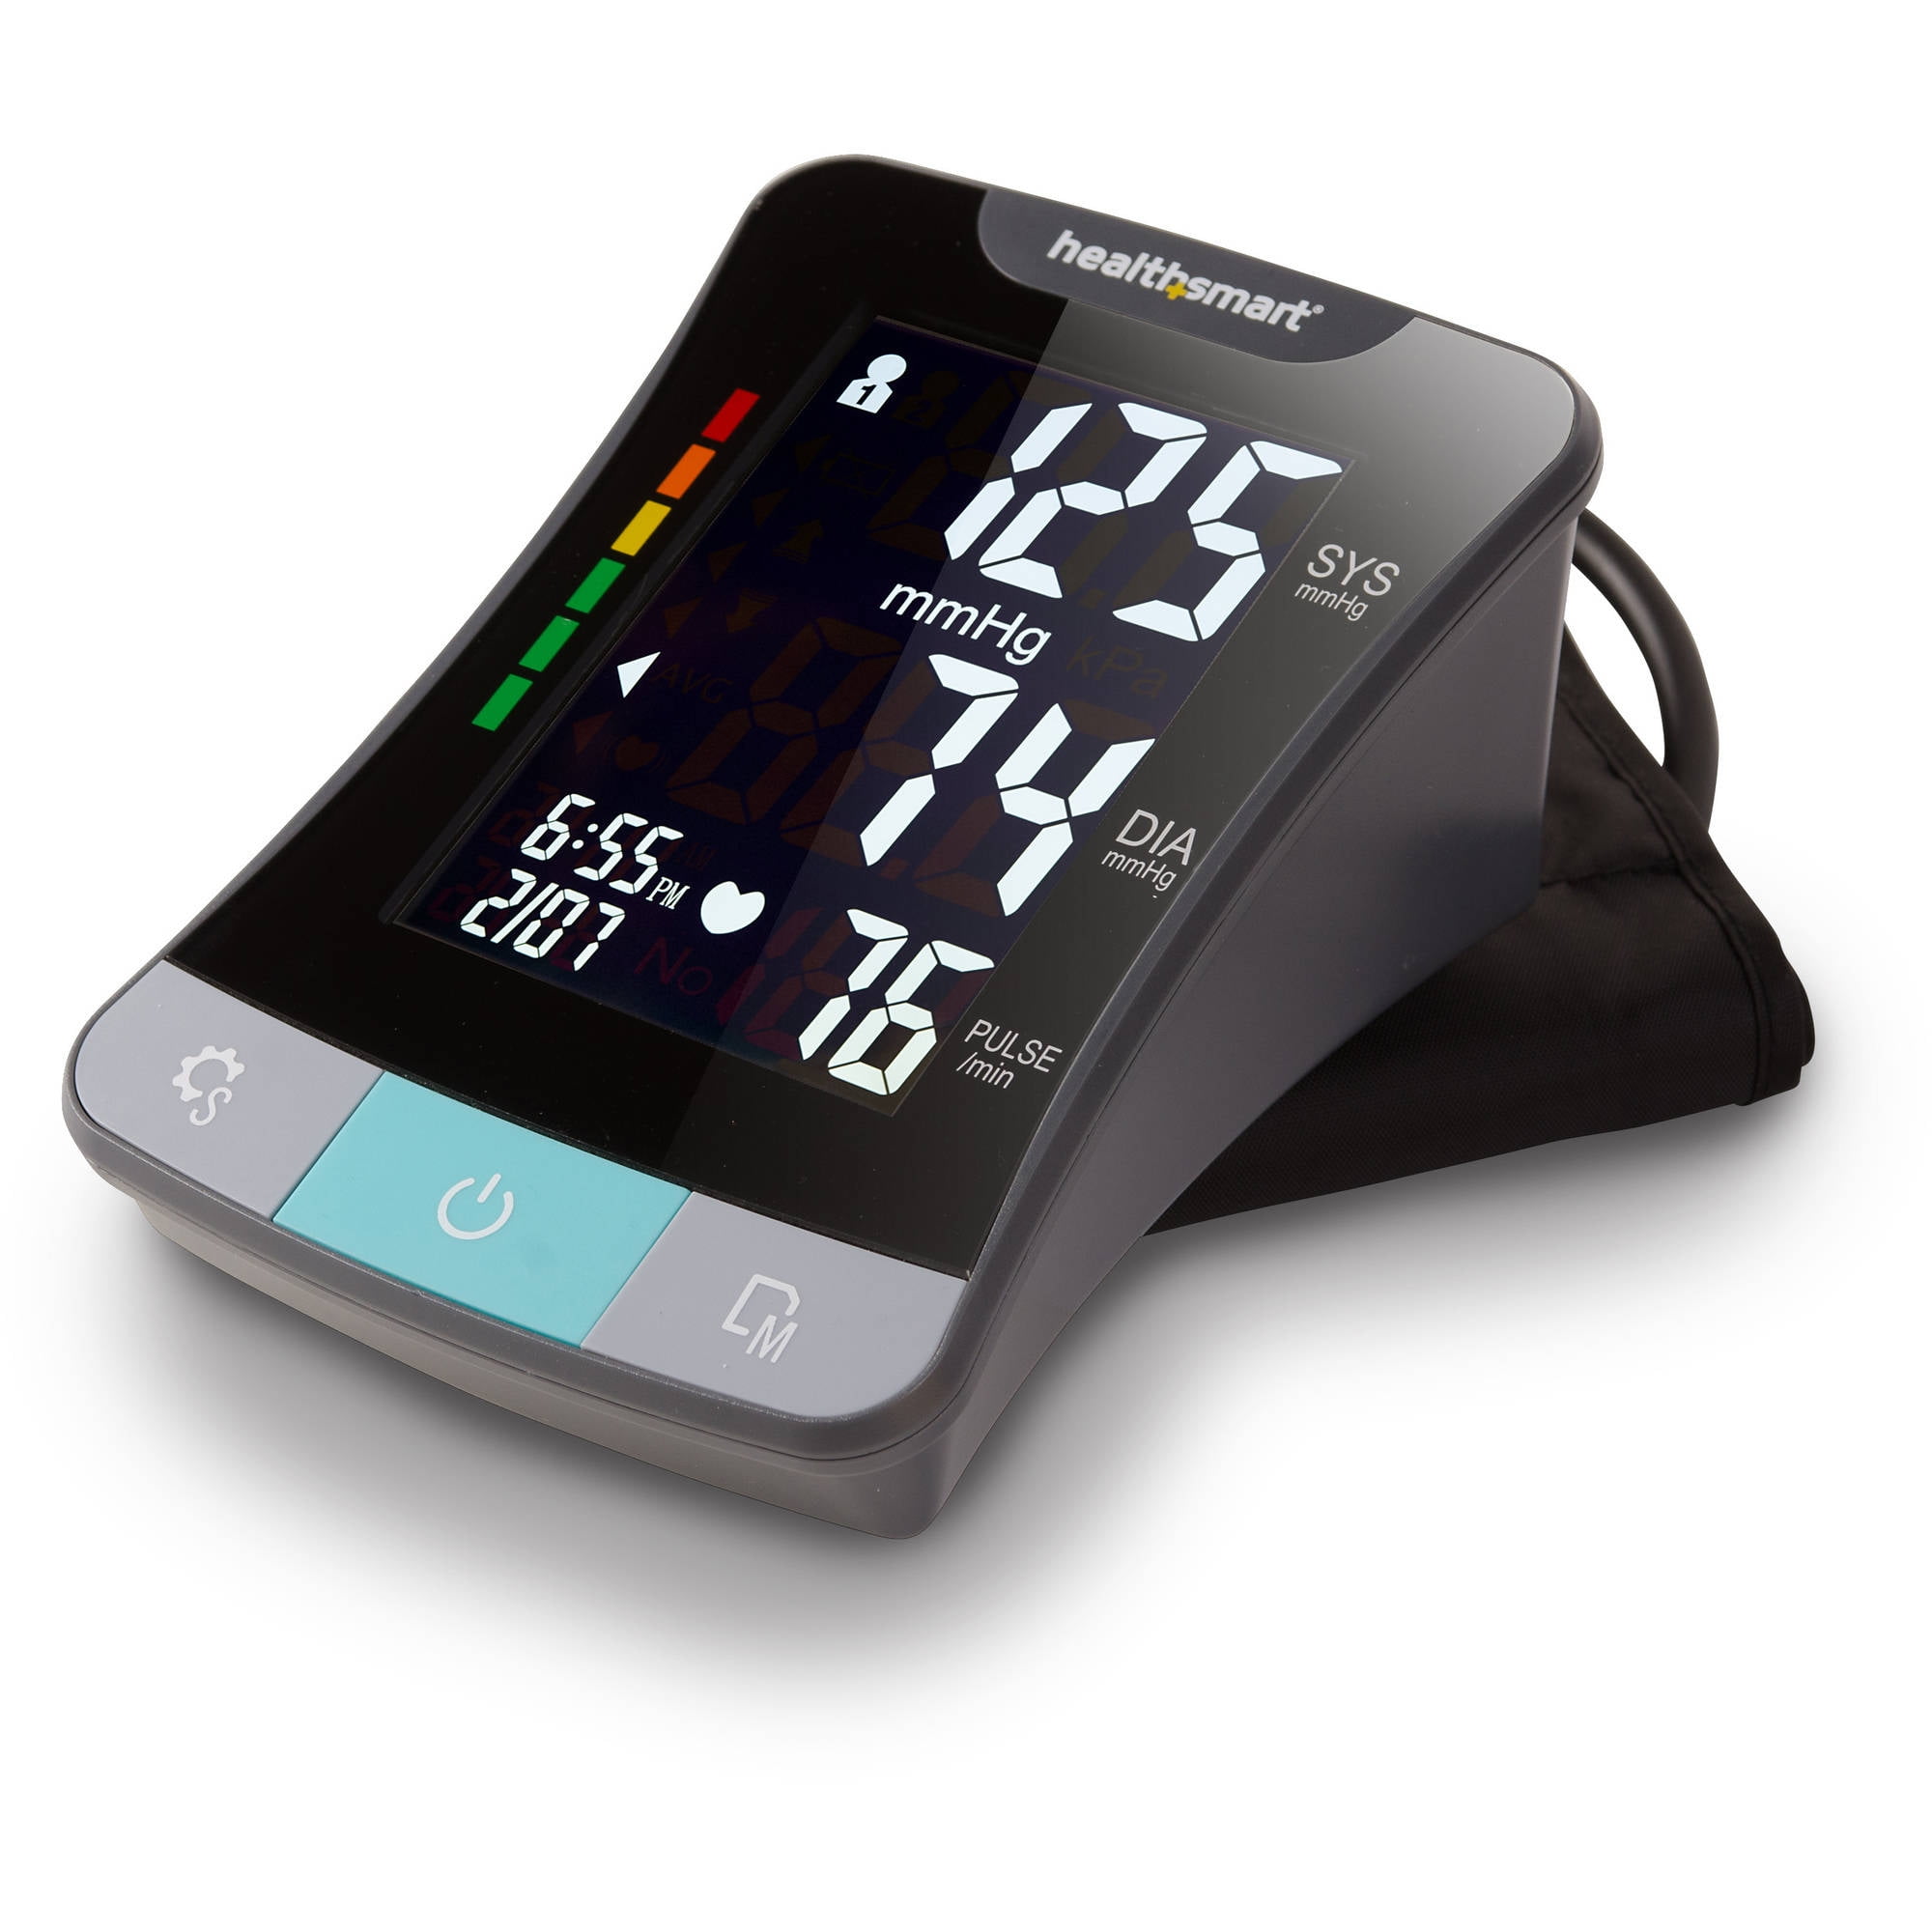 FDK Digital Talking Arm Cuff Blood Pressure Monitor